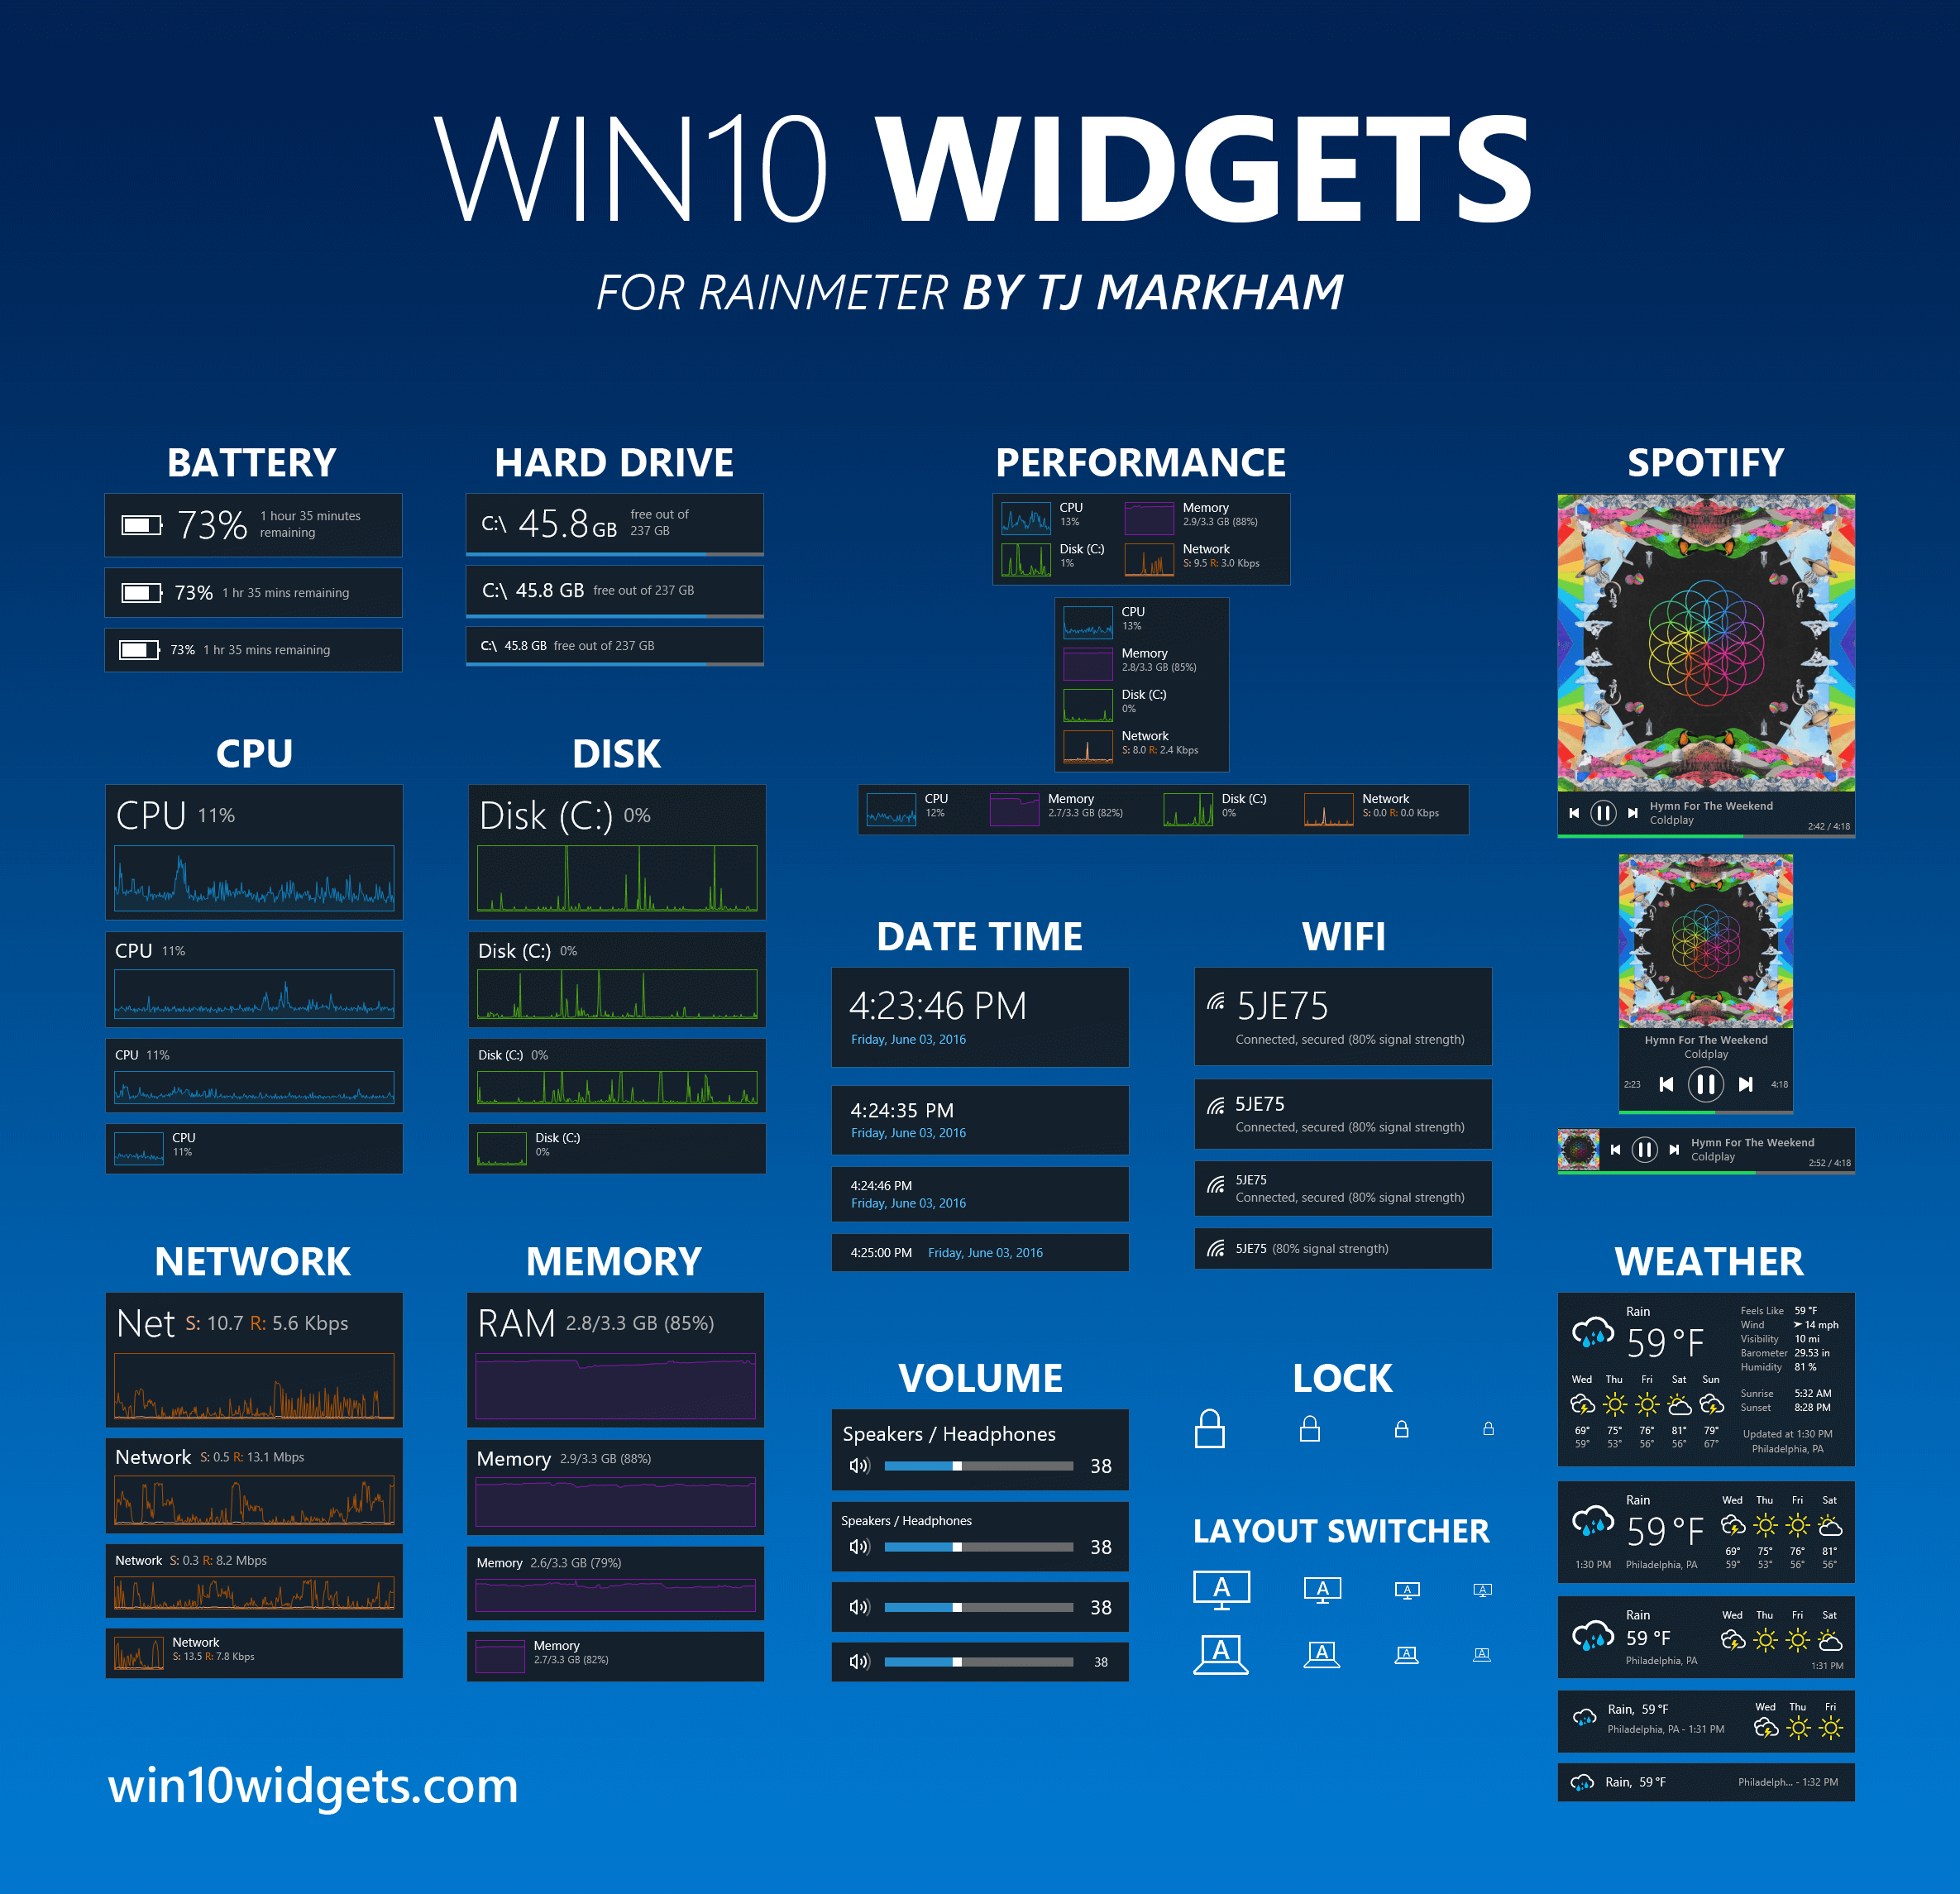 Win10 Widgets apporte les gadgets sur Windows 10